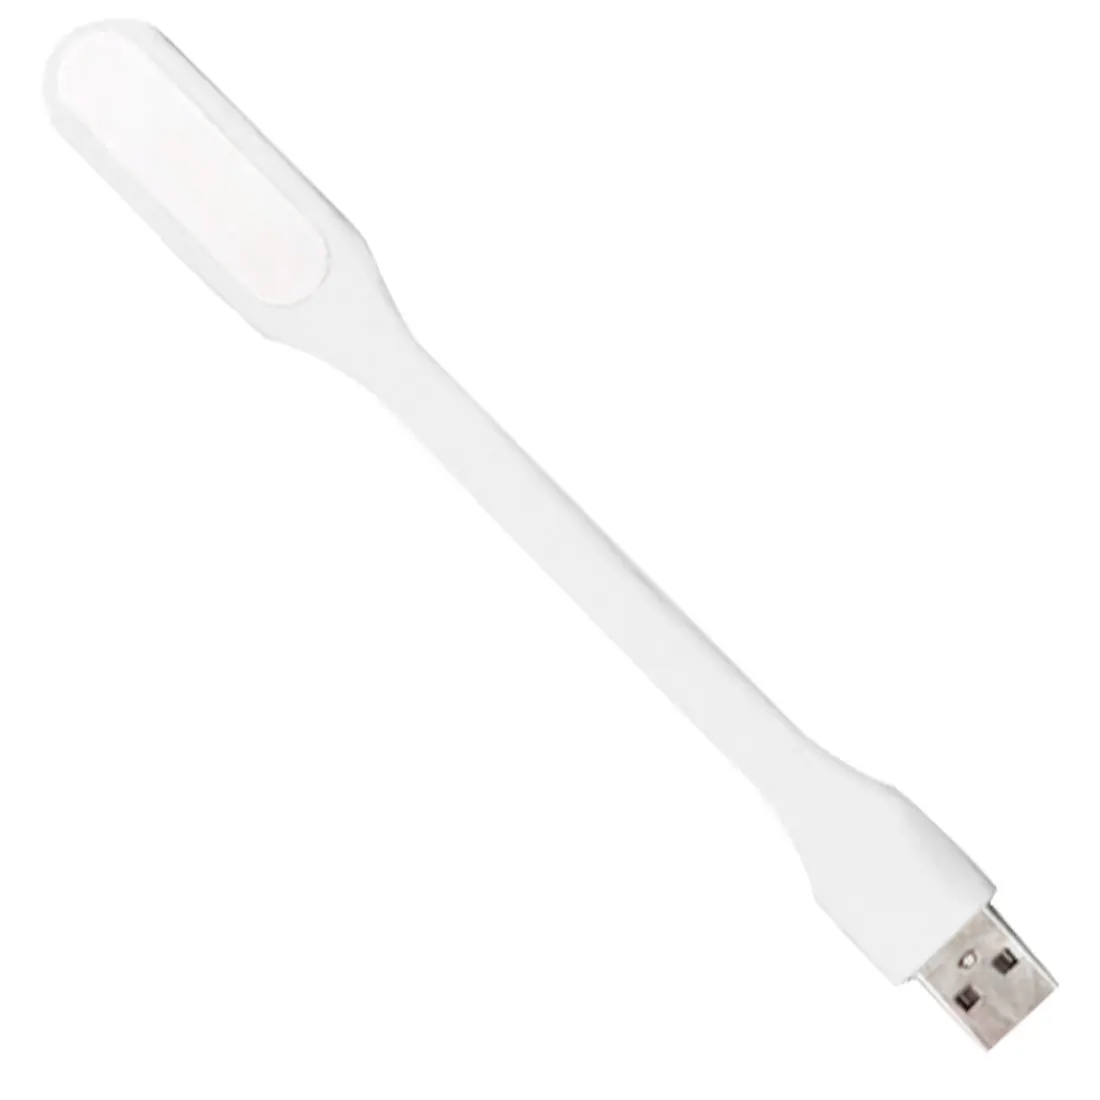 USB ночные огни 5 В 1,2 Вт Мощность банк Чтение свет книга свет Mini USB светодио дный свет Тетрадь Портативный светодио дный лампа - Испускаемый цвет: White